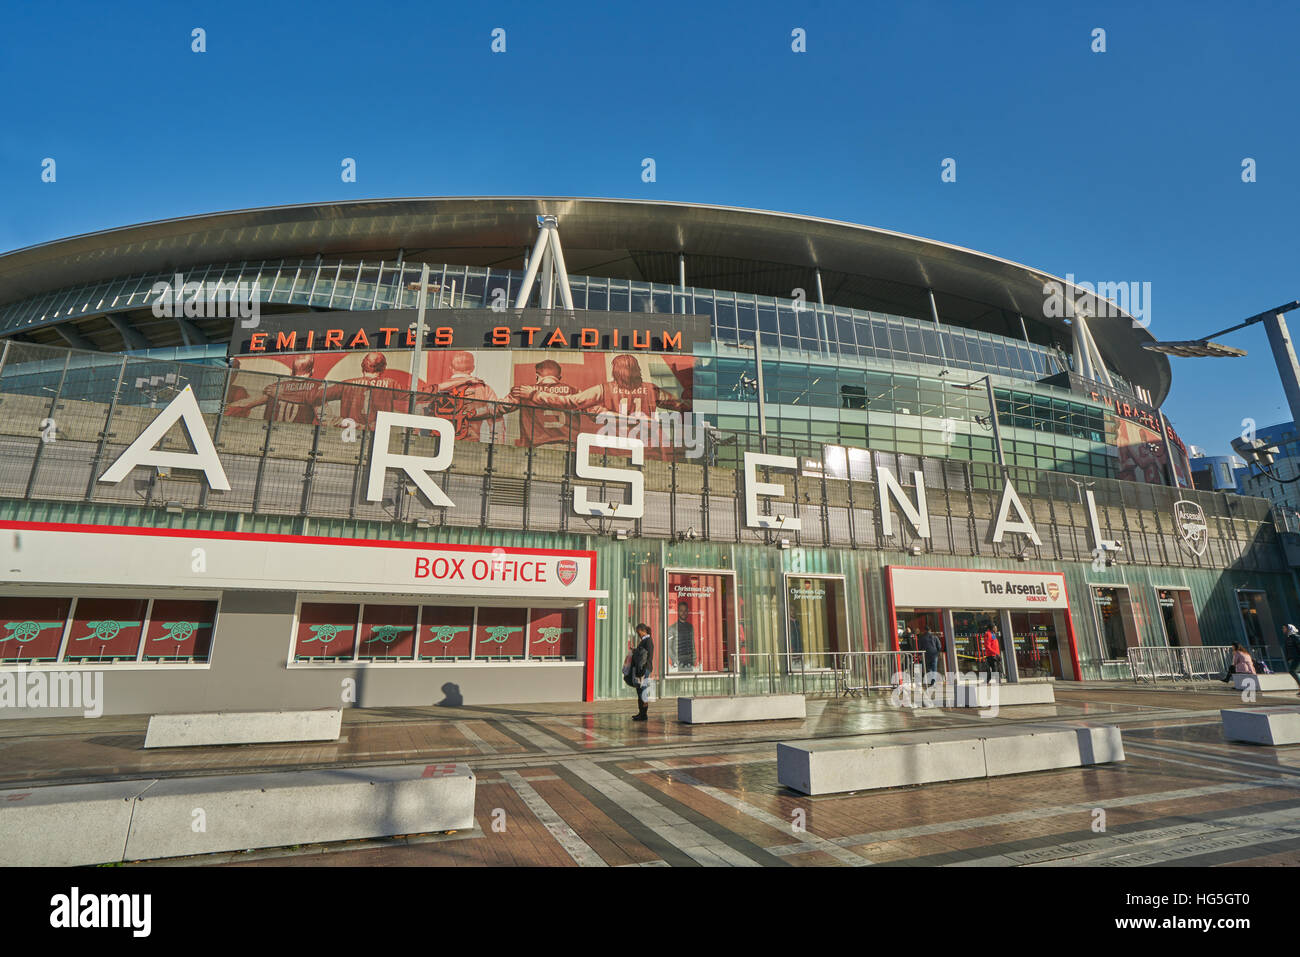 Estadio de fútbol del Arsenal. Emirates Stadium Foto de stock